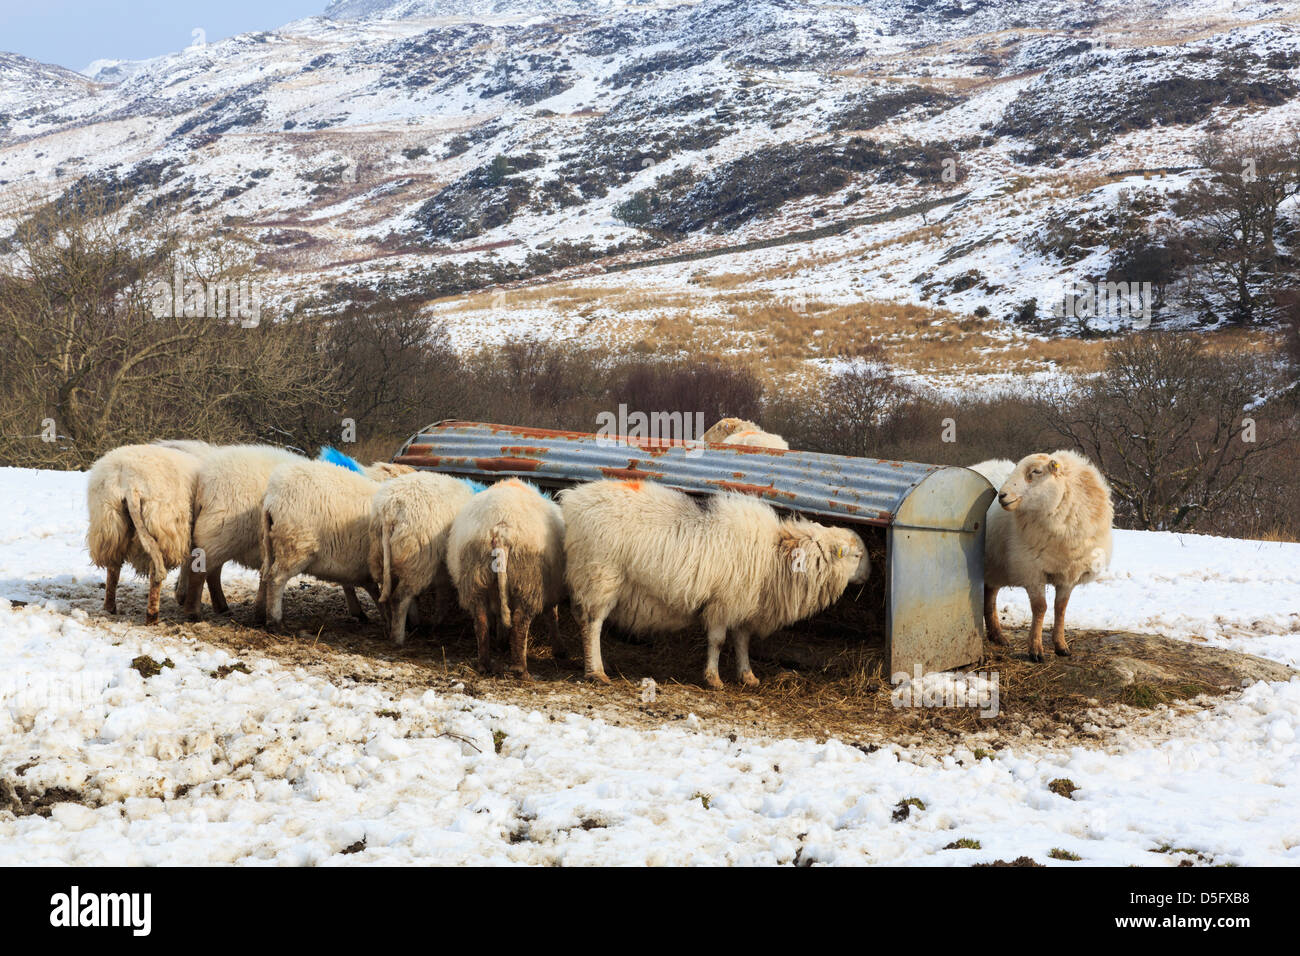 Hardy raza de ovejas de las montañas de Gales con alimentación desde una comida en la canaleta de nieve en upland Hill Farm en Snowdonia tierras altas. Capel Curig Conwy al norte de Gales, Reino Unido Foto de stock